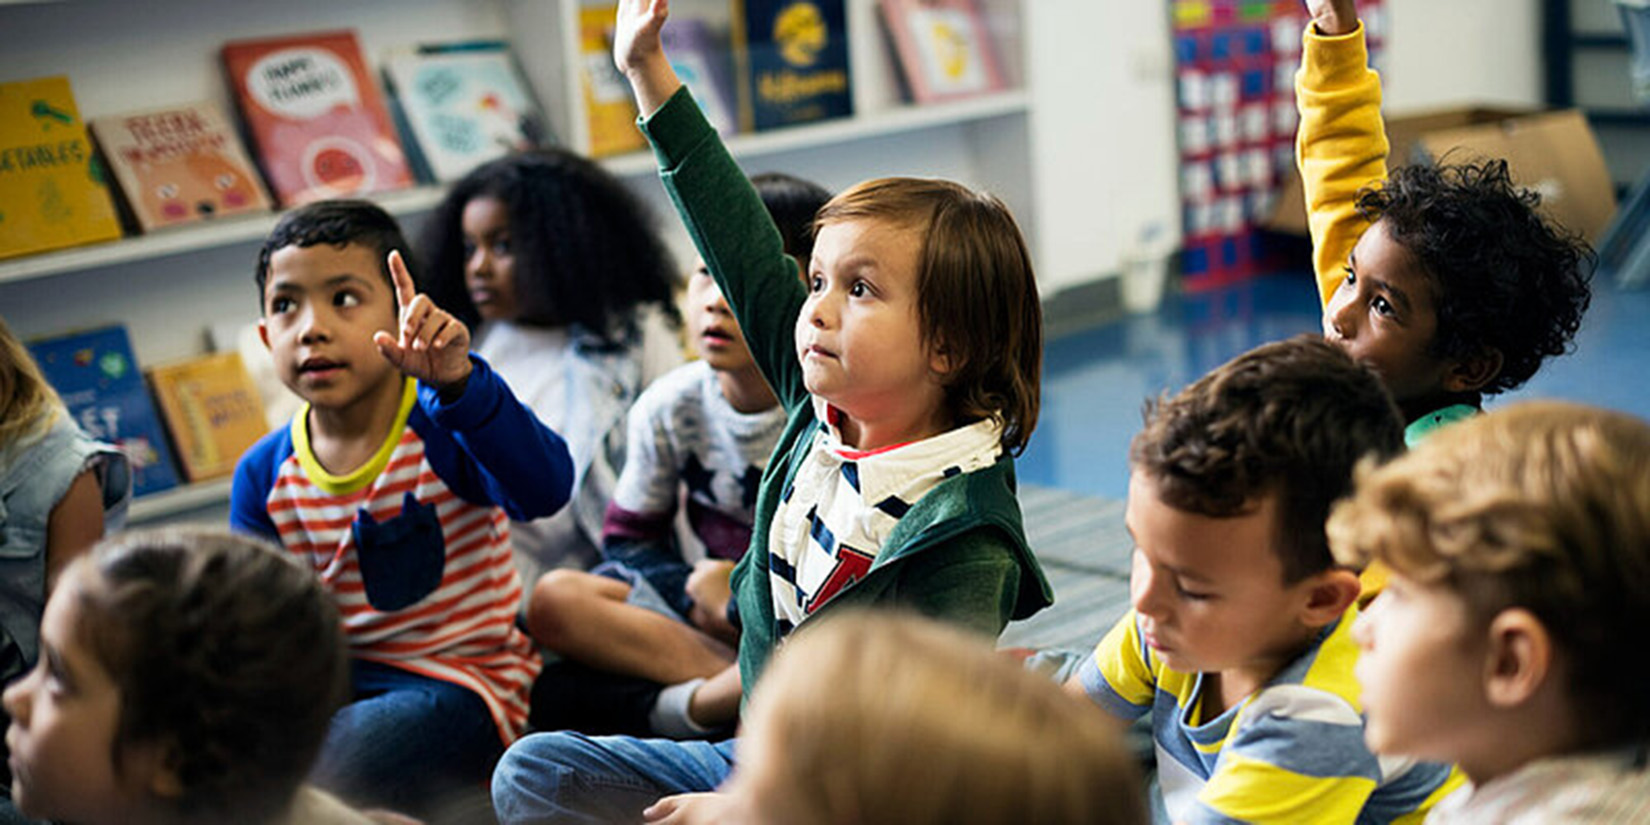 Children raising their hands during a class.